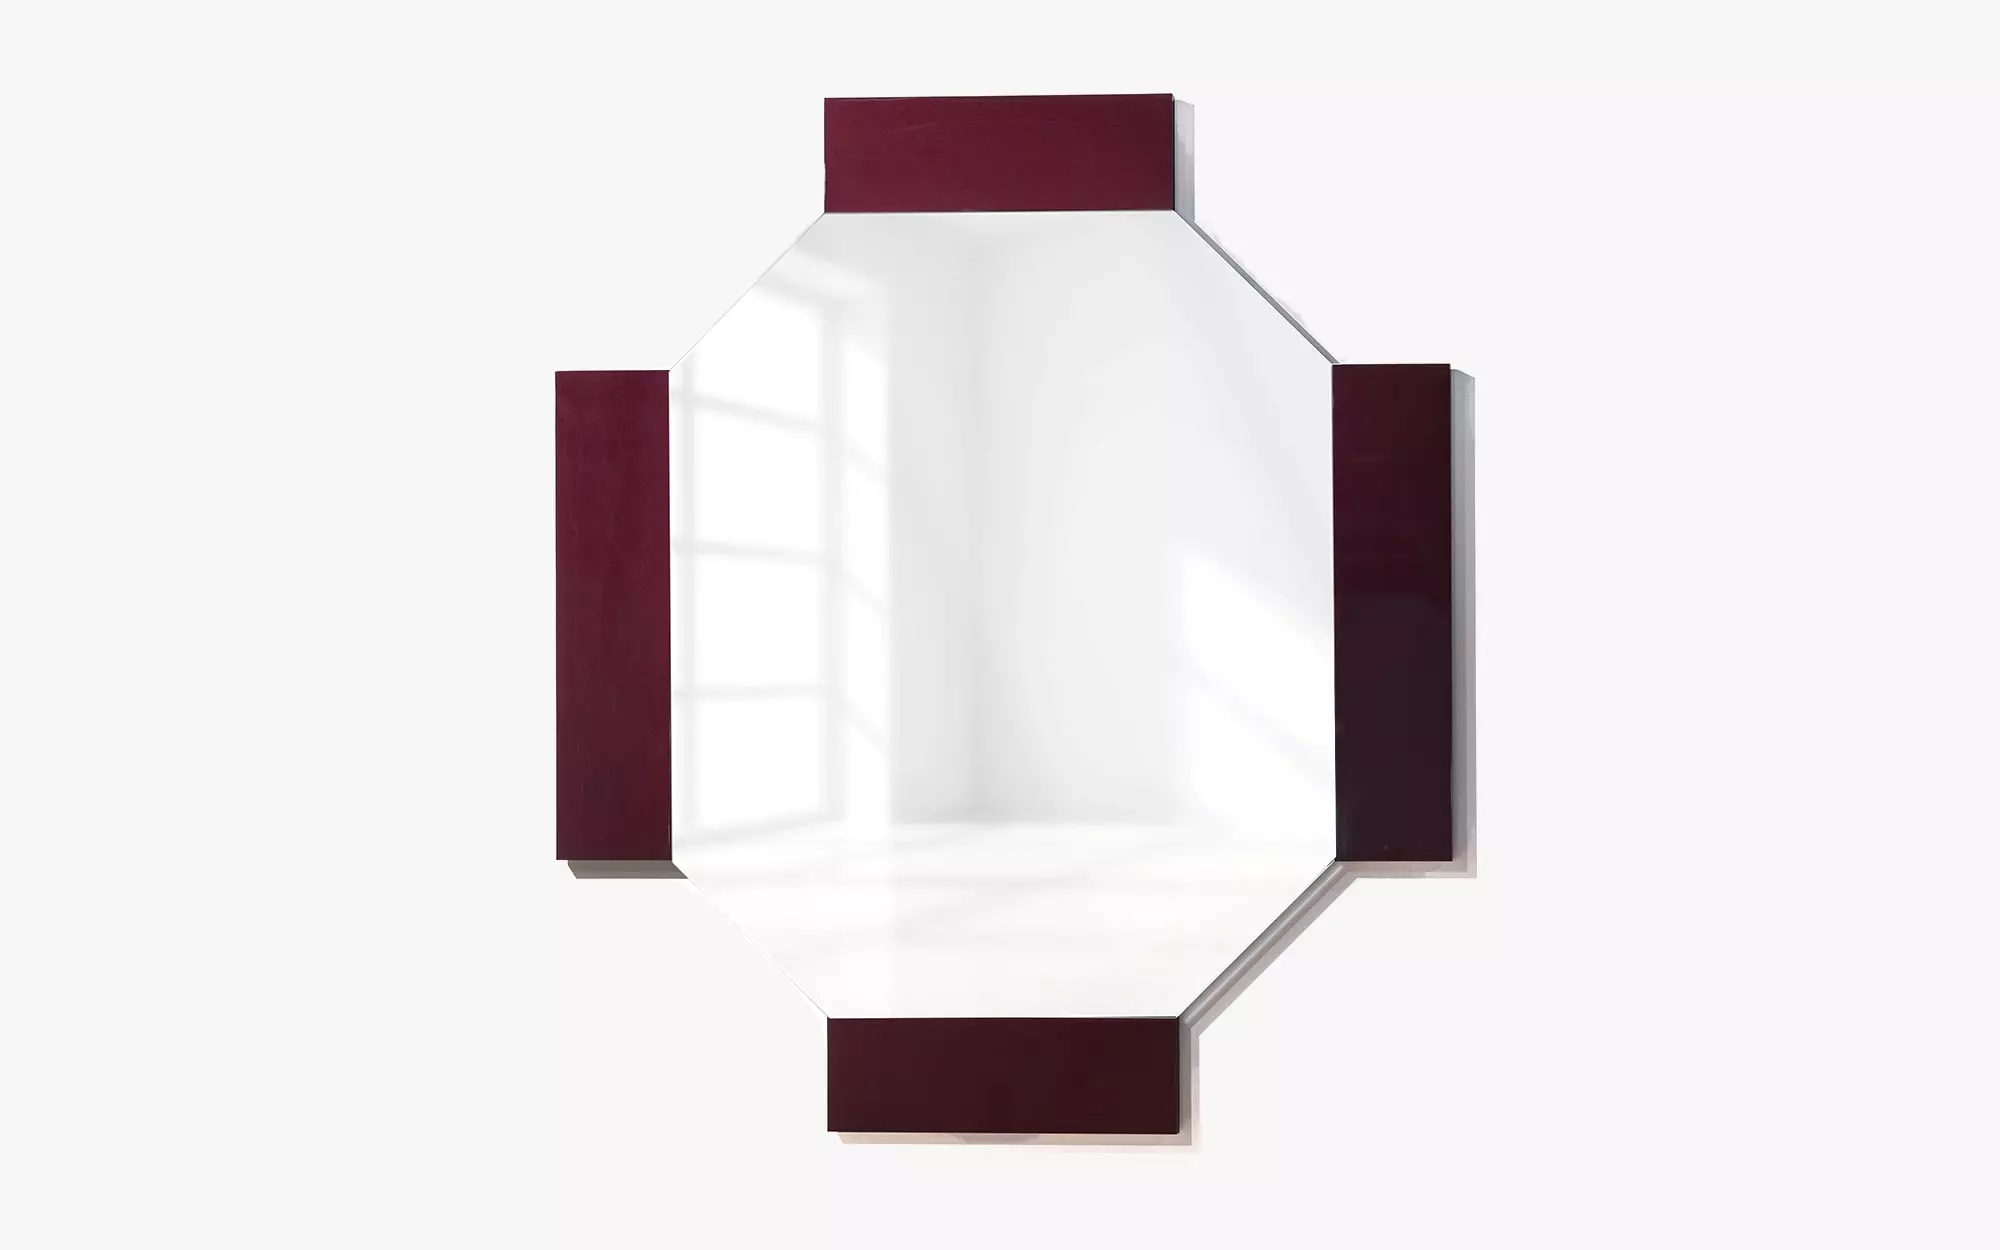 Satellite 4 Mirror - Pierre Charpin - Coffee table - Galerie kreo